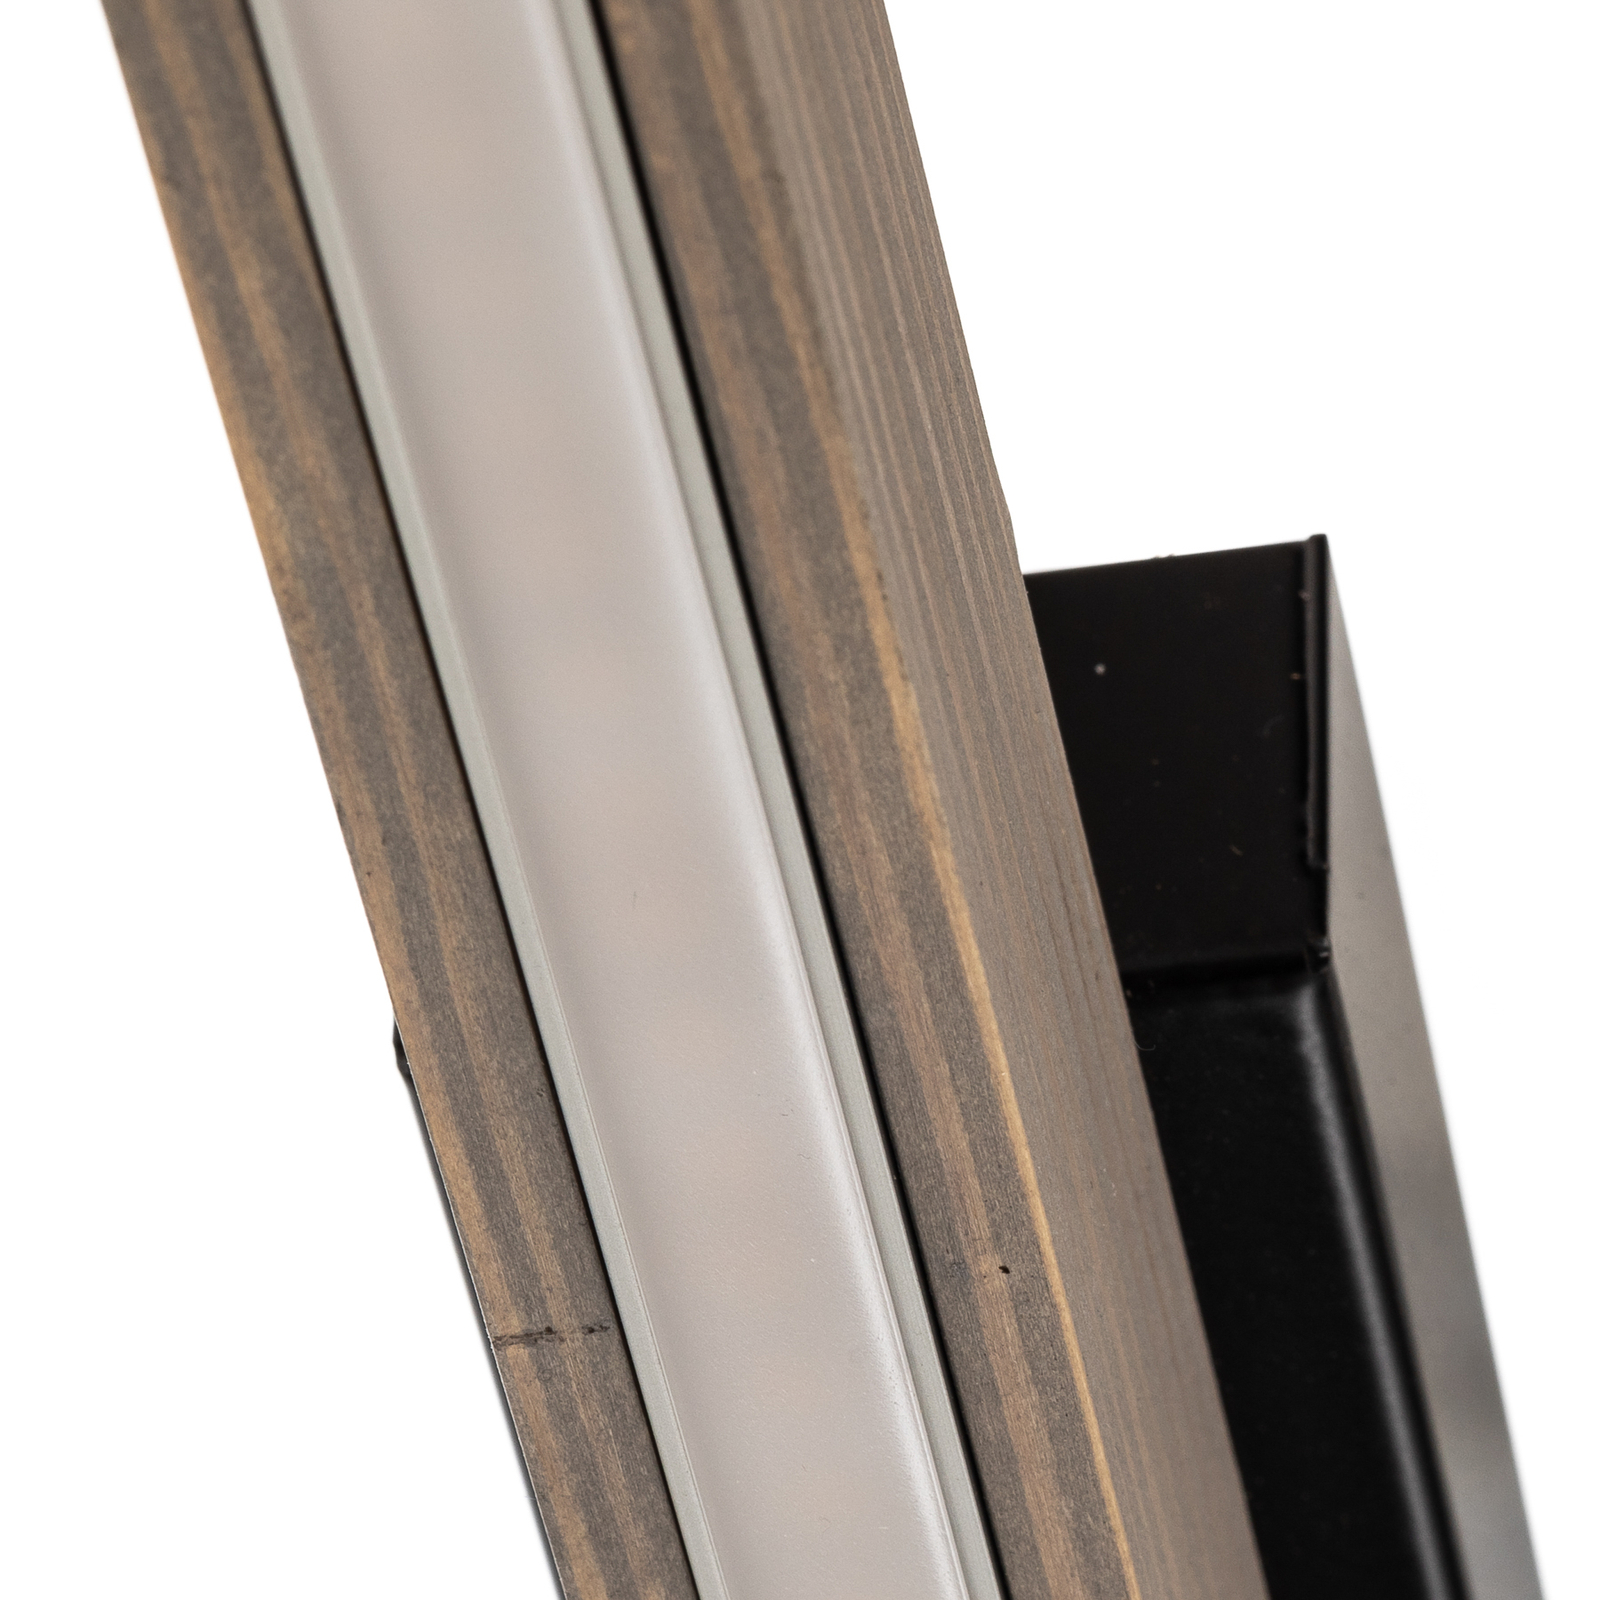 LED-taklampe Forrestal, 90 cm lang